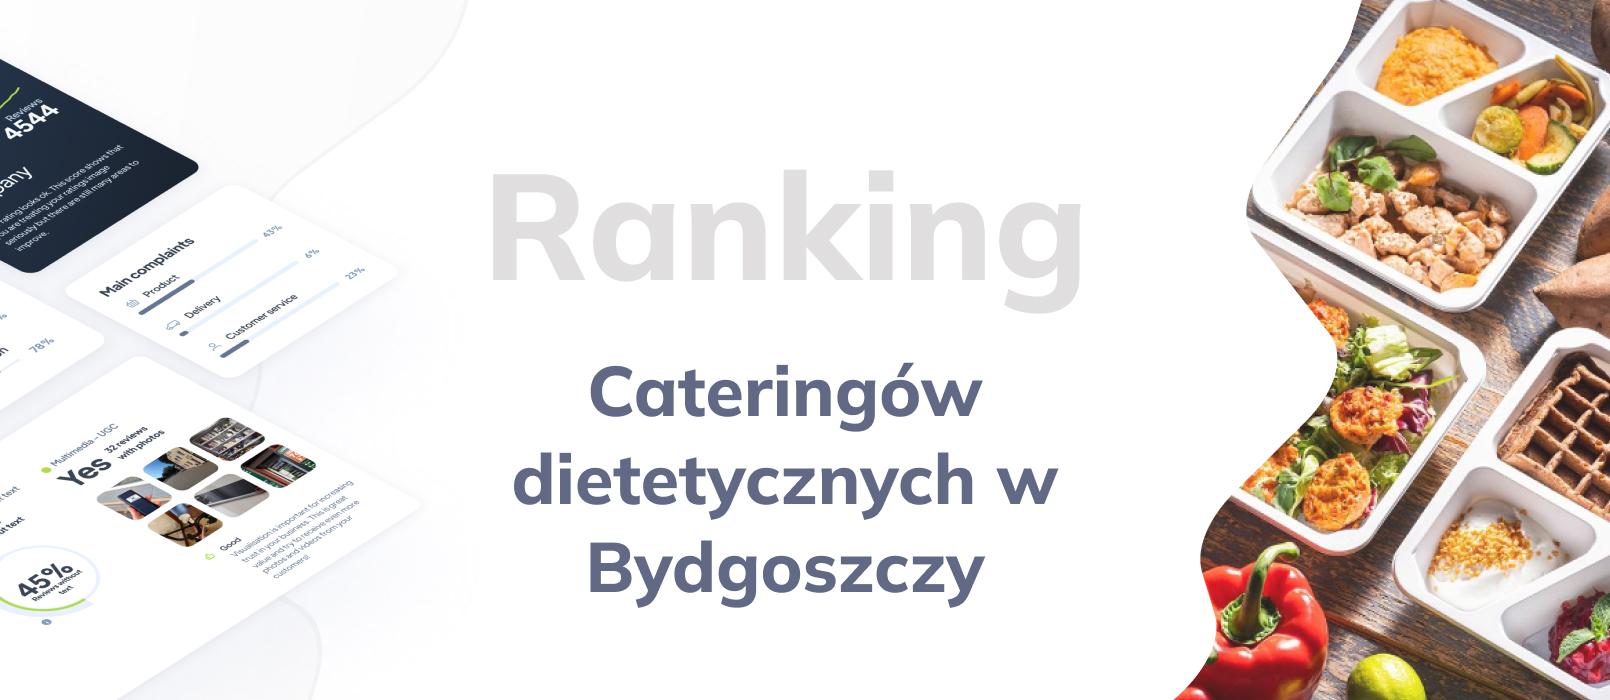 Cateringi dietetyczne w Bydgoszczy - ranking TOP 10